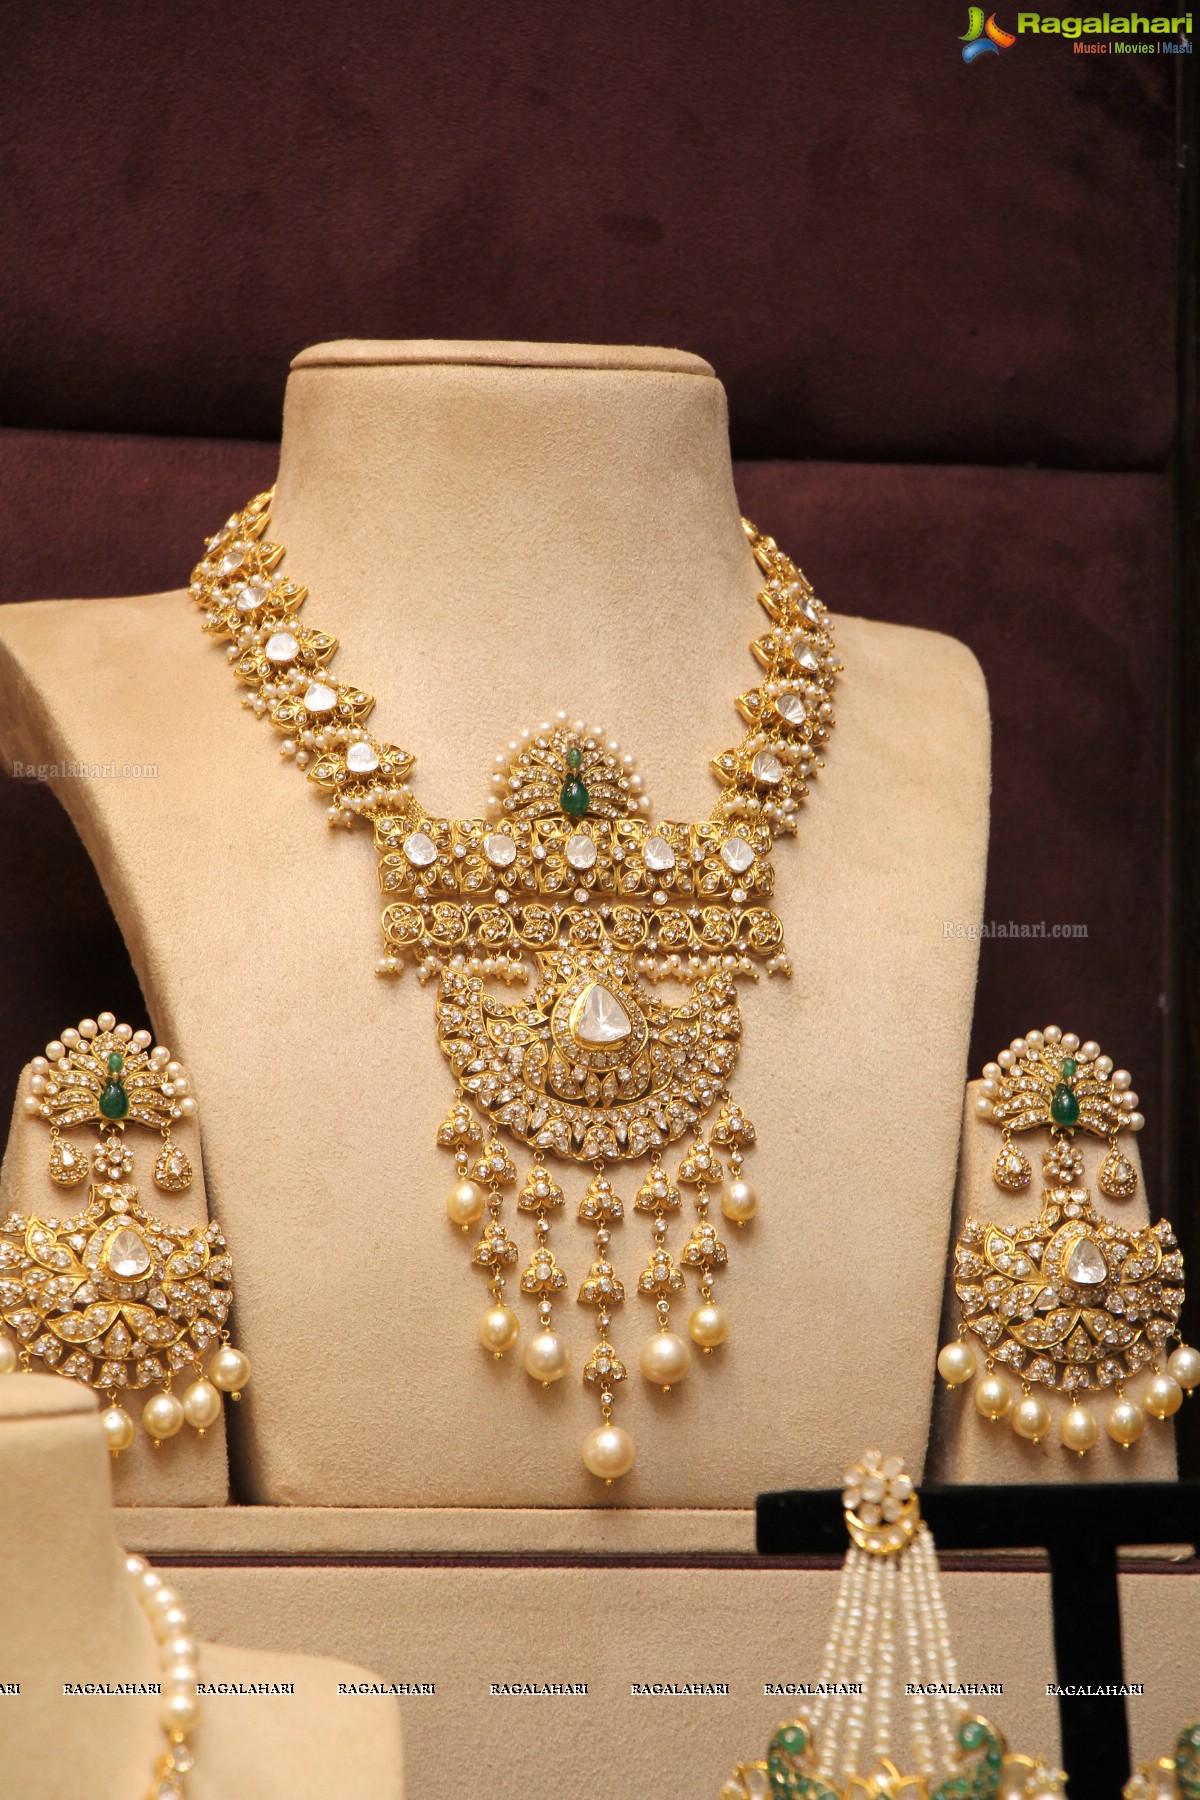 Grand Launch of Musaddilal Gems and Jewels at Banjara Hills, Hyderabad